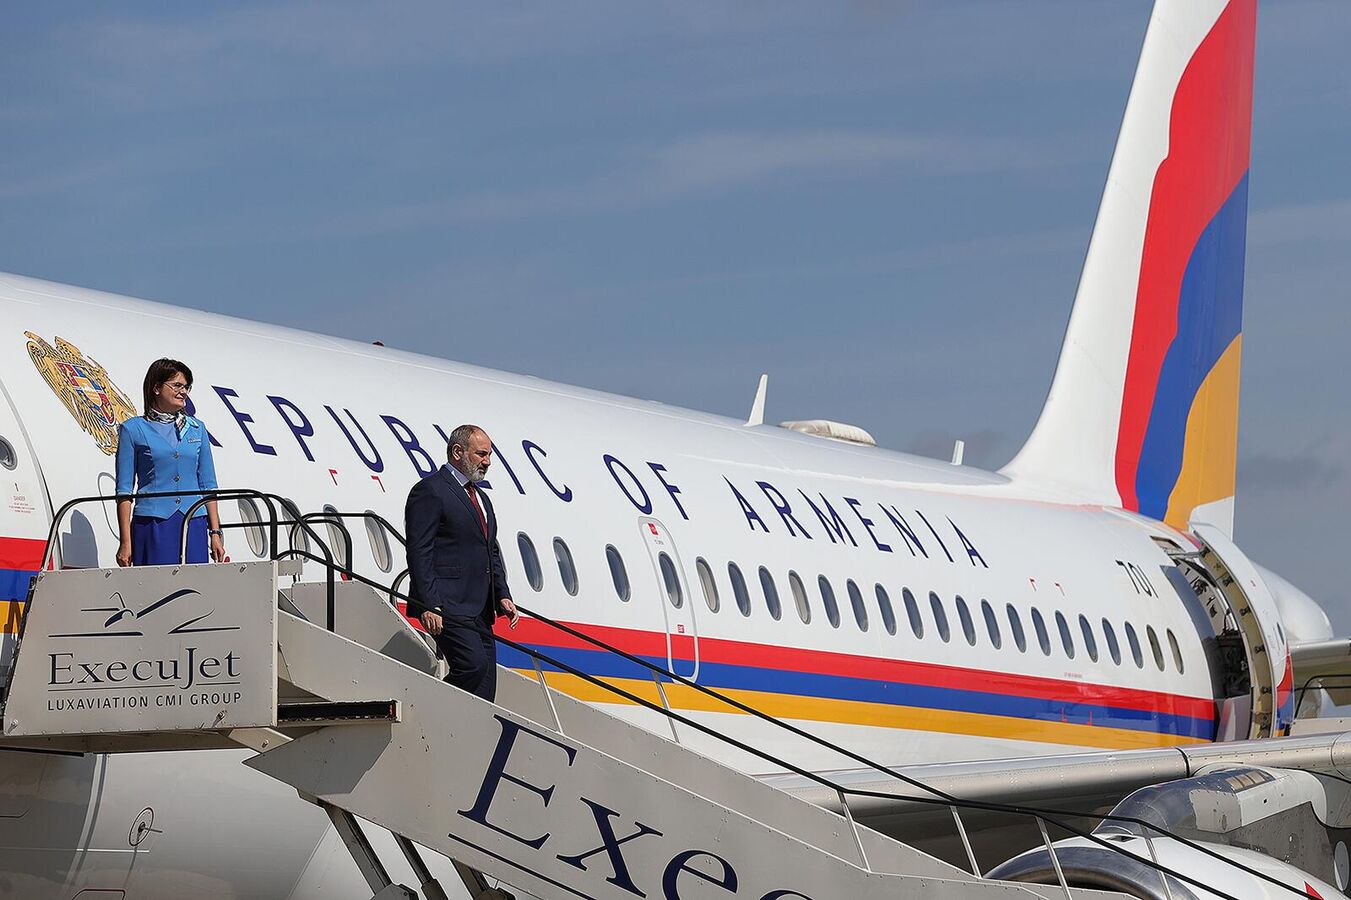 Пашинян отбыл в Брюссель для переговоров с Алиевым